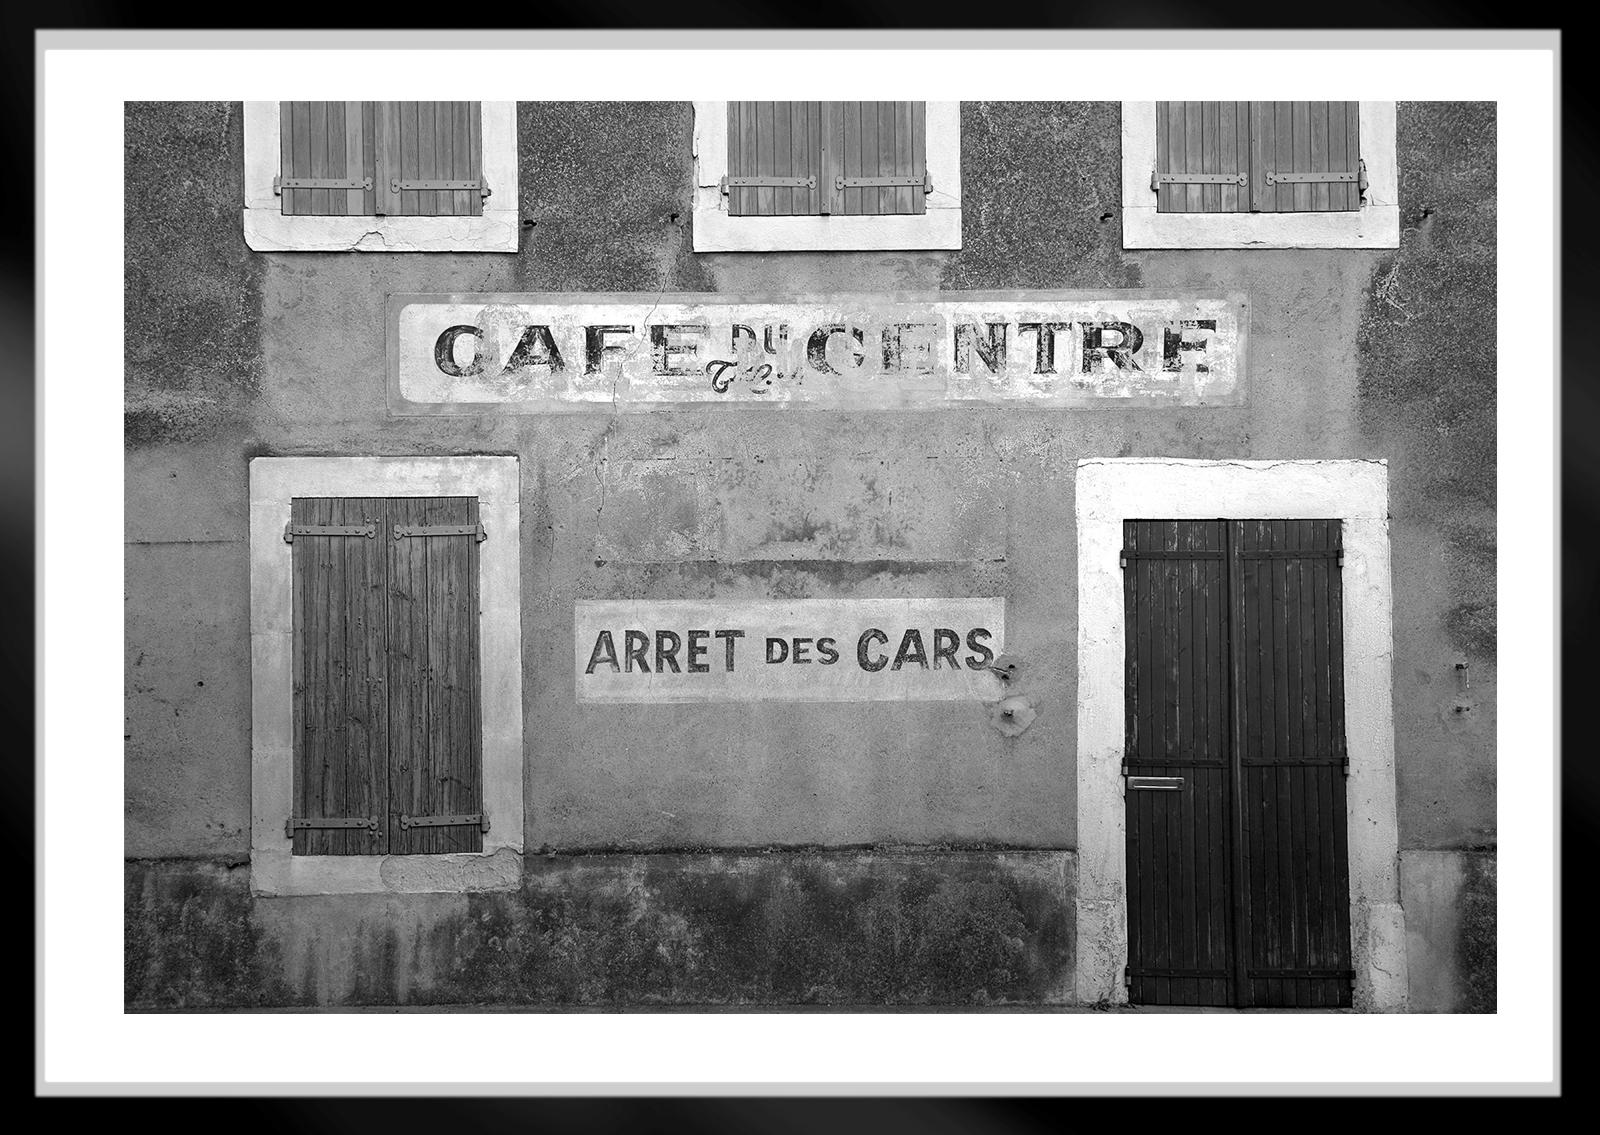 Café- Signierter Stillleben-Druck in limitierter Auflage, Schwarz-Weiß, Frankreich (Grau), Still-Life Photograph, von Ian Sanderson